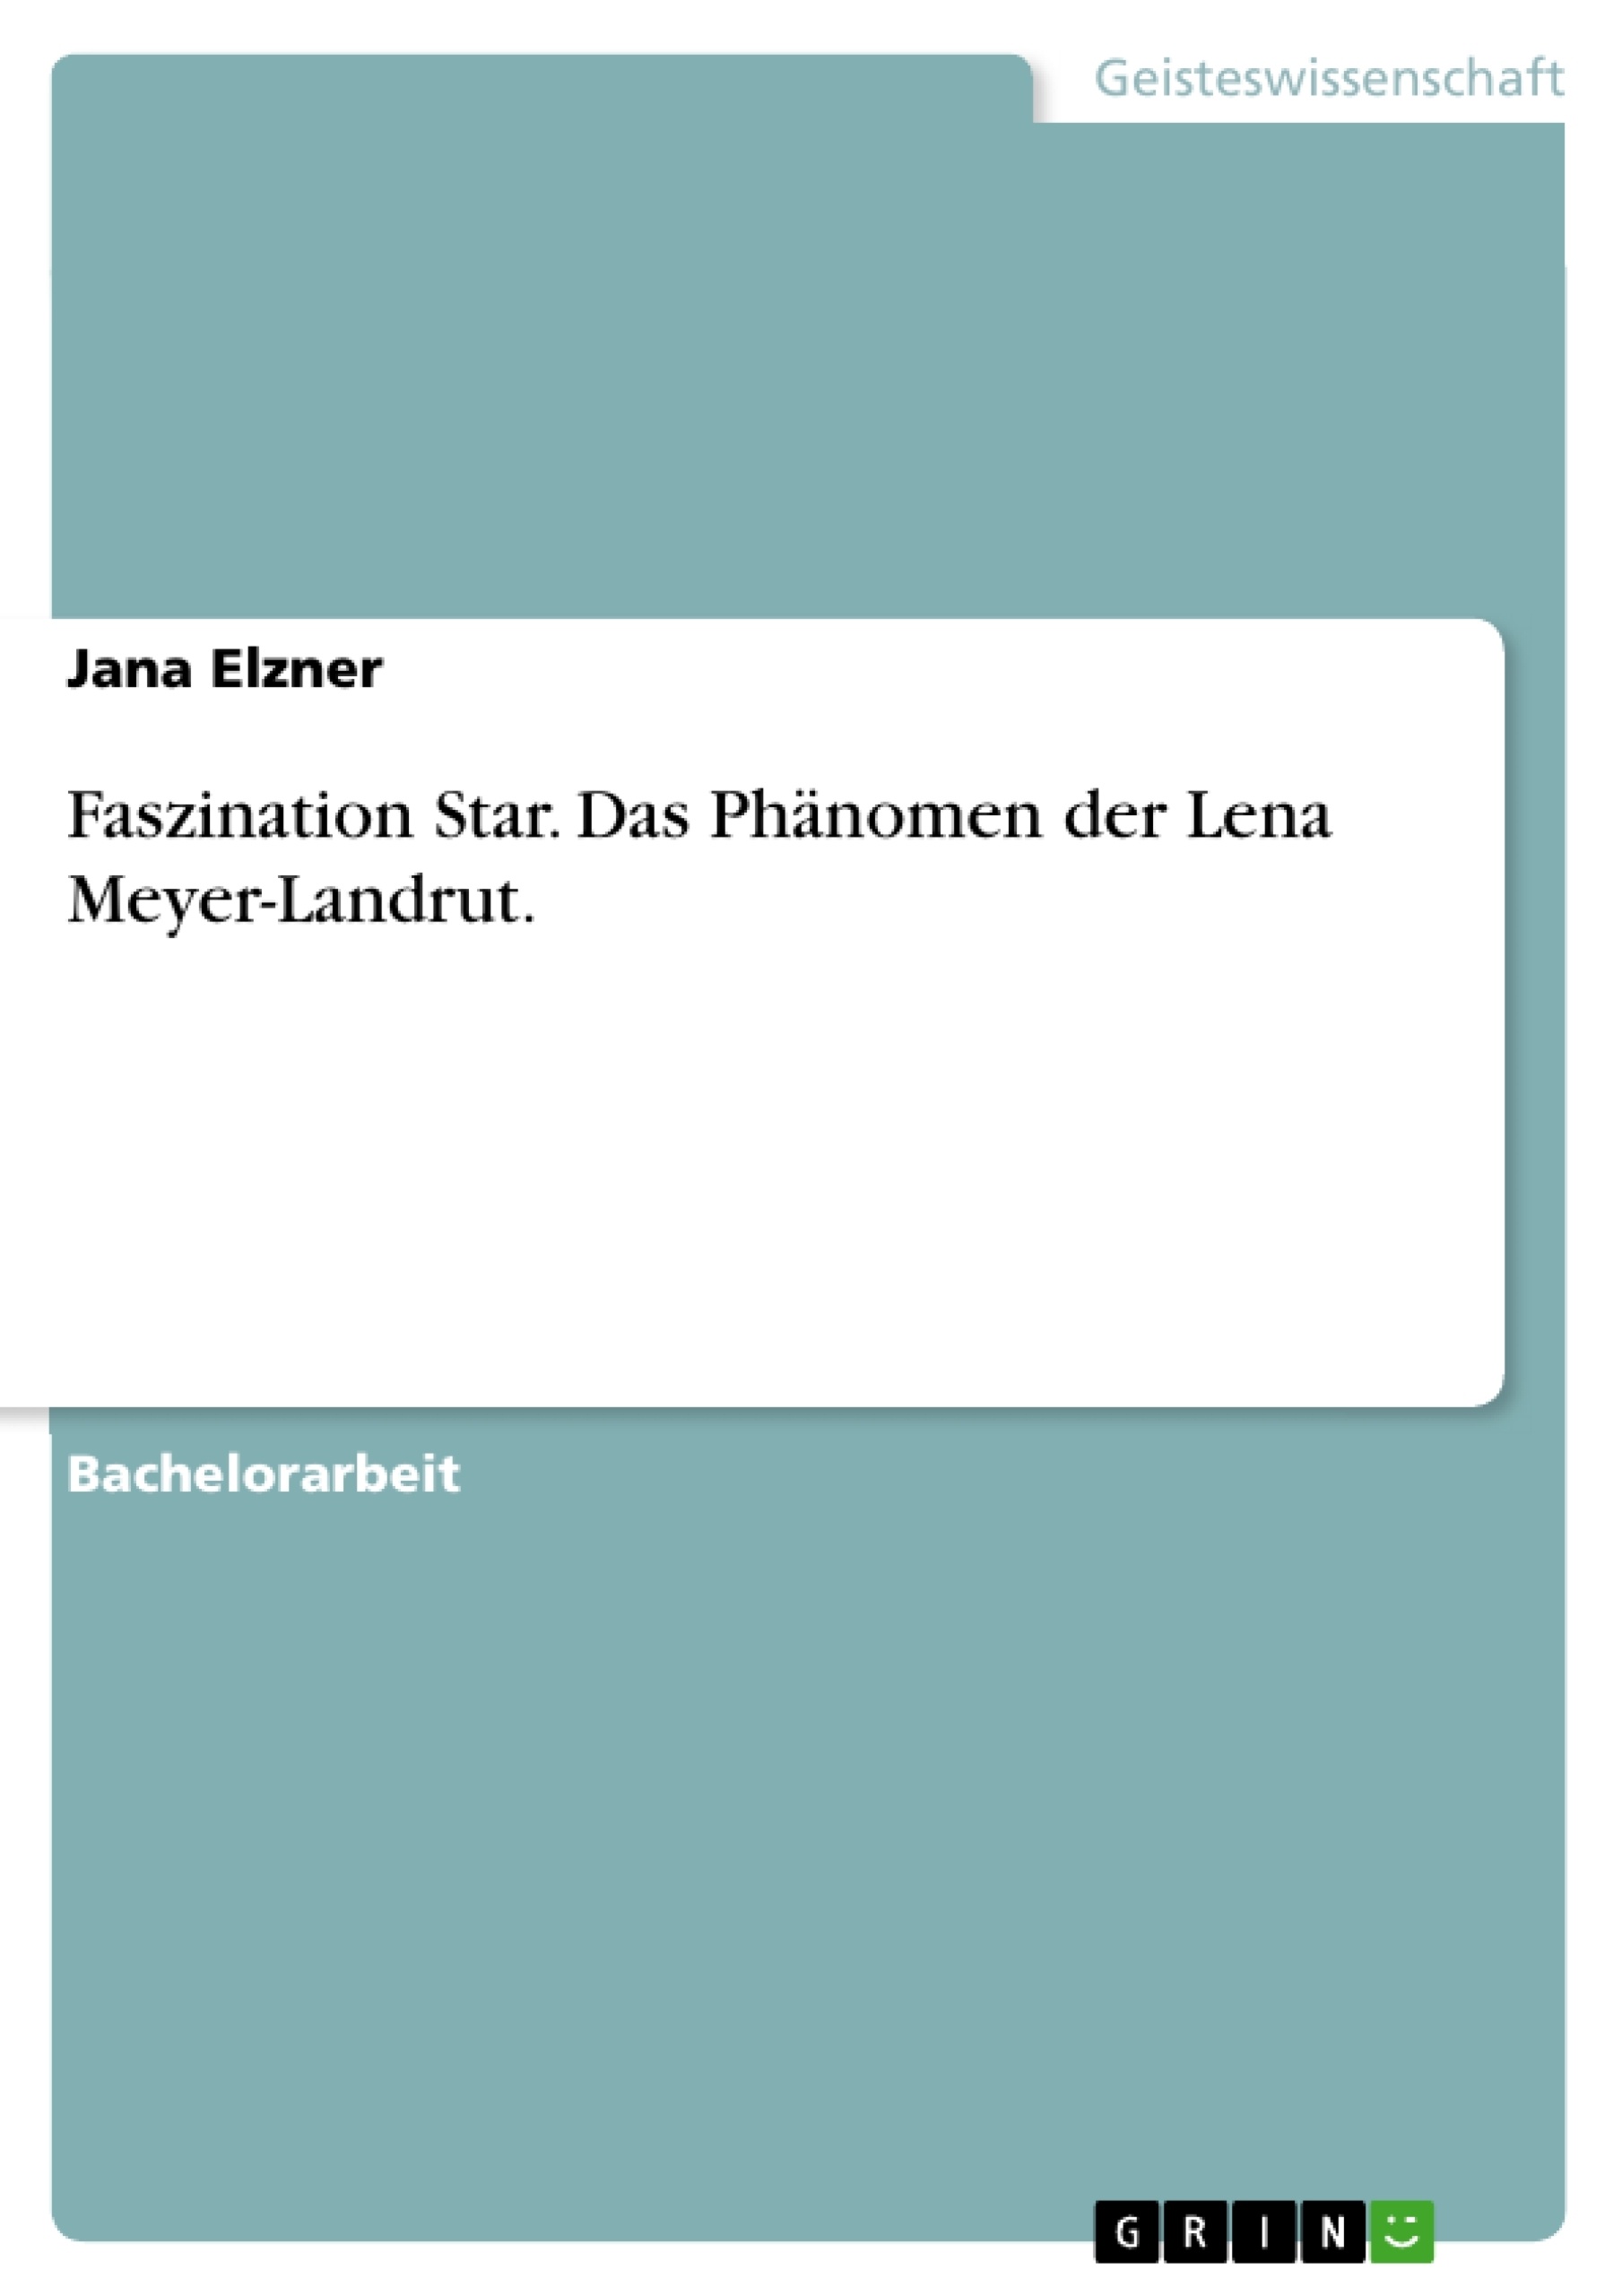 Titel: Faszination Star. Das Phänomen der Lena Meyer-Landrut.